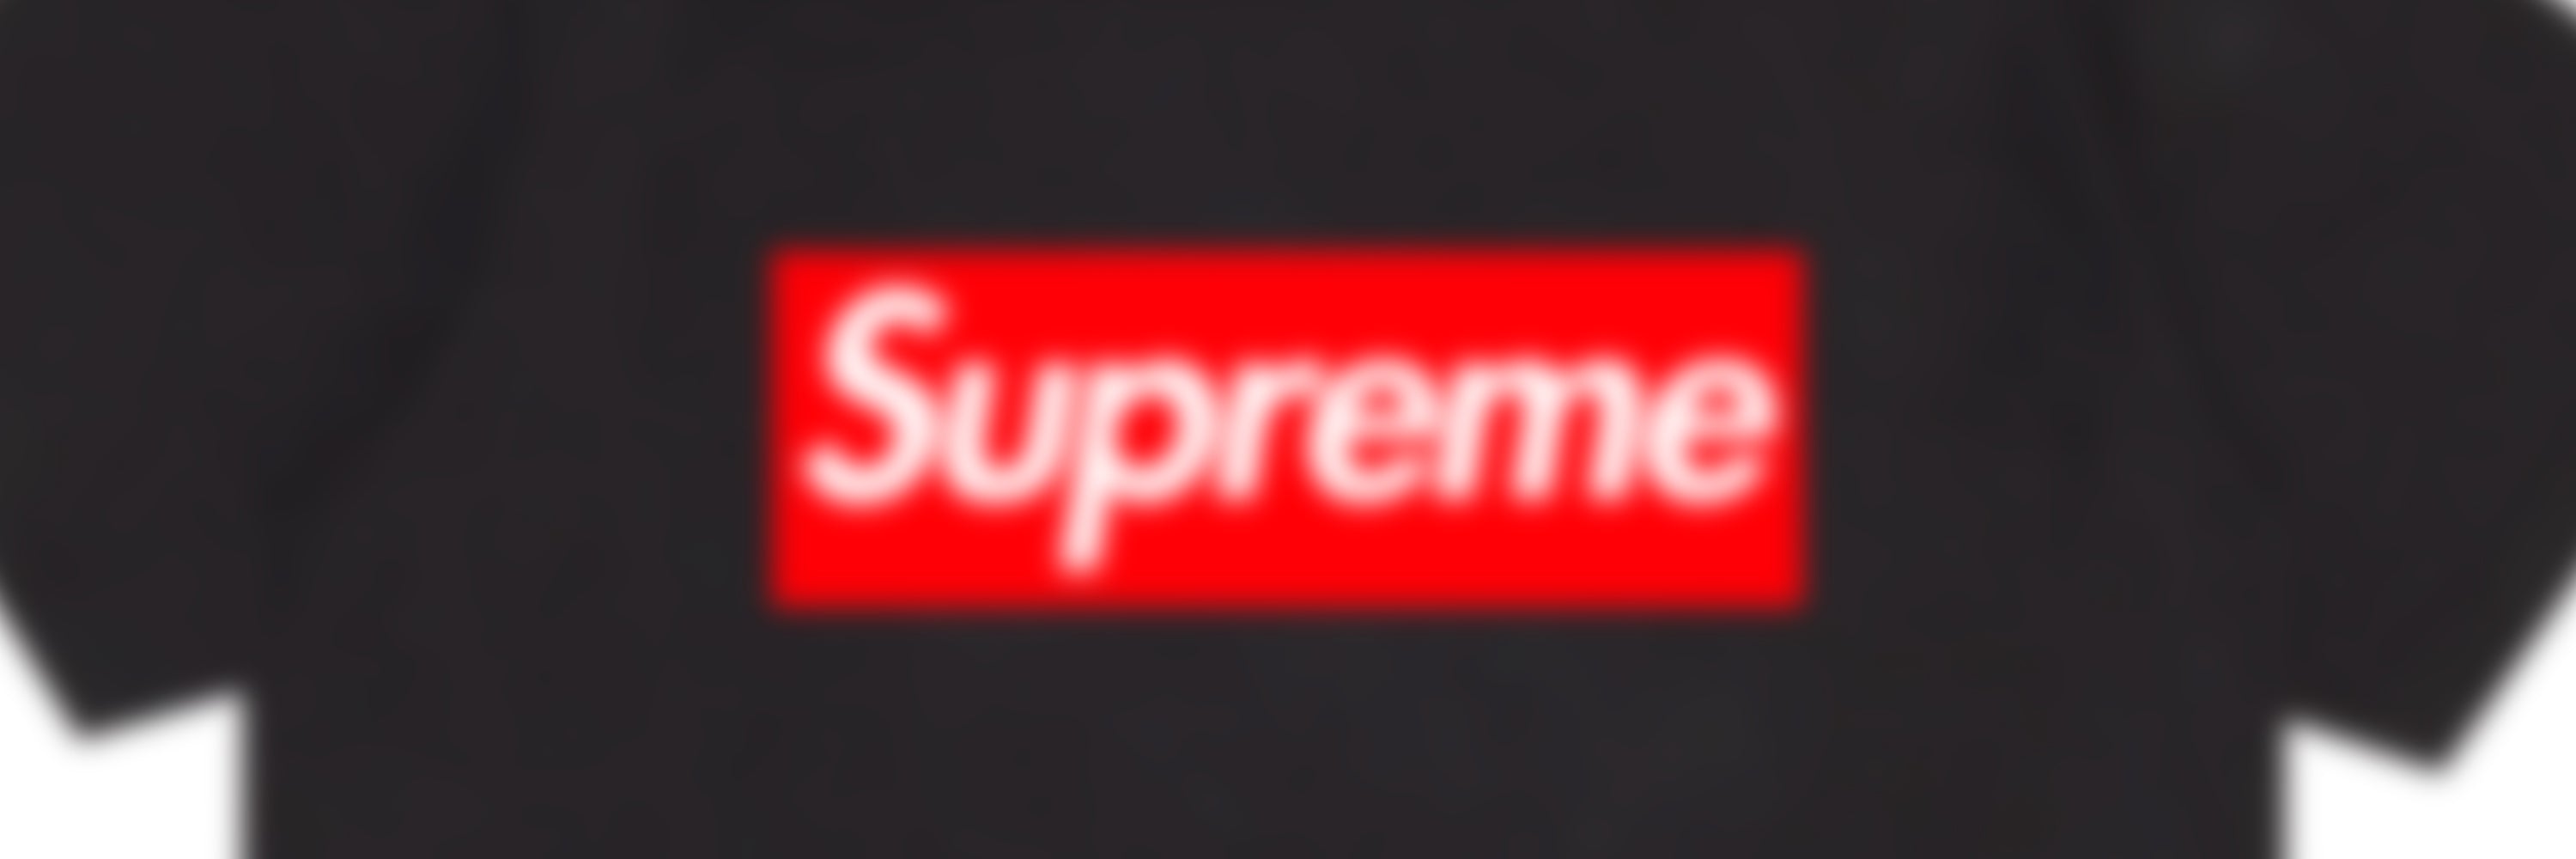 Supreme x Emilio Pucci Box Logo Tee 'White/Blue' | Men's Size XL